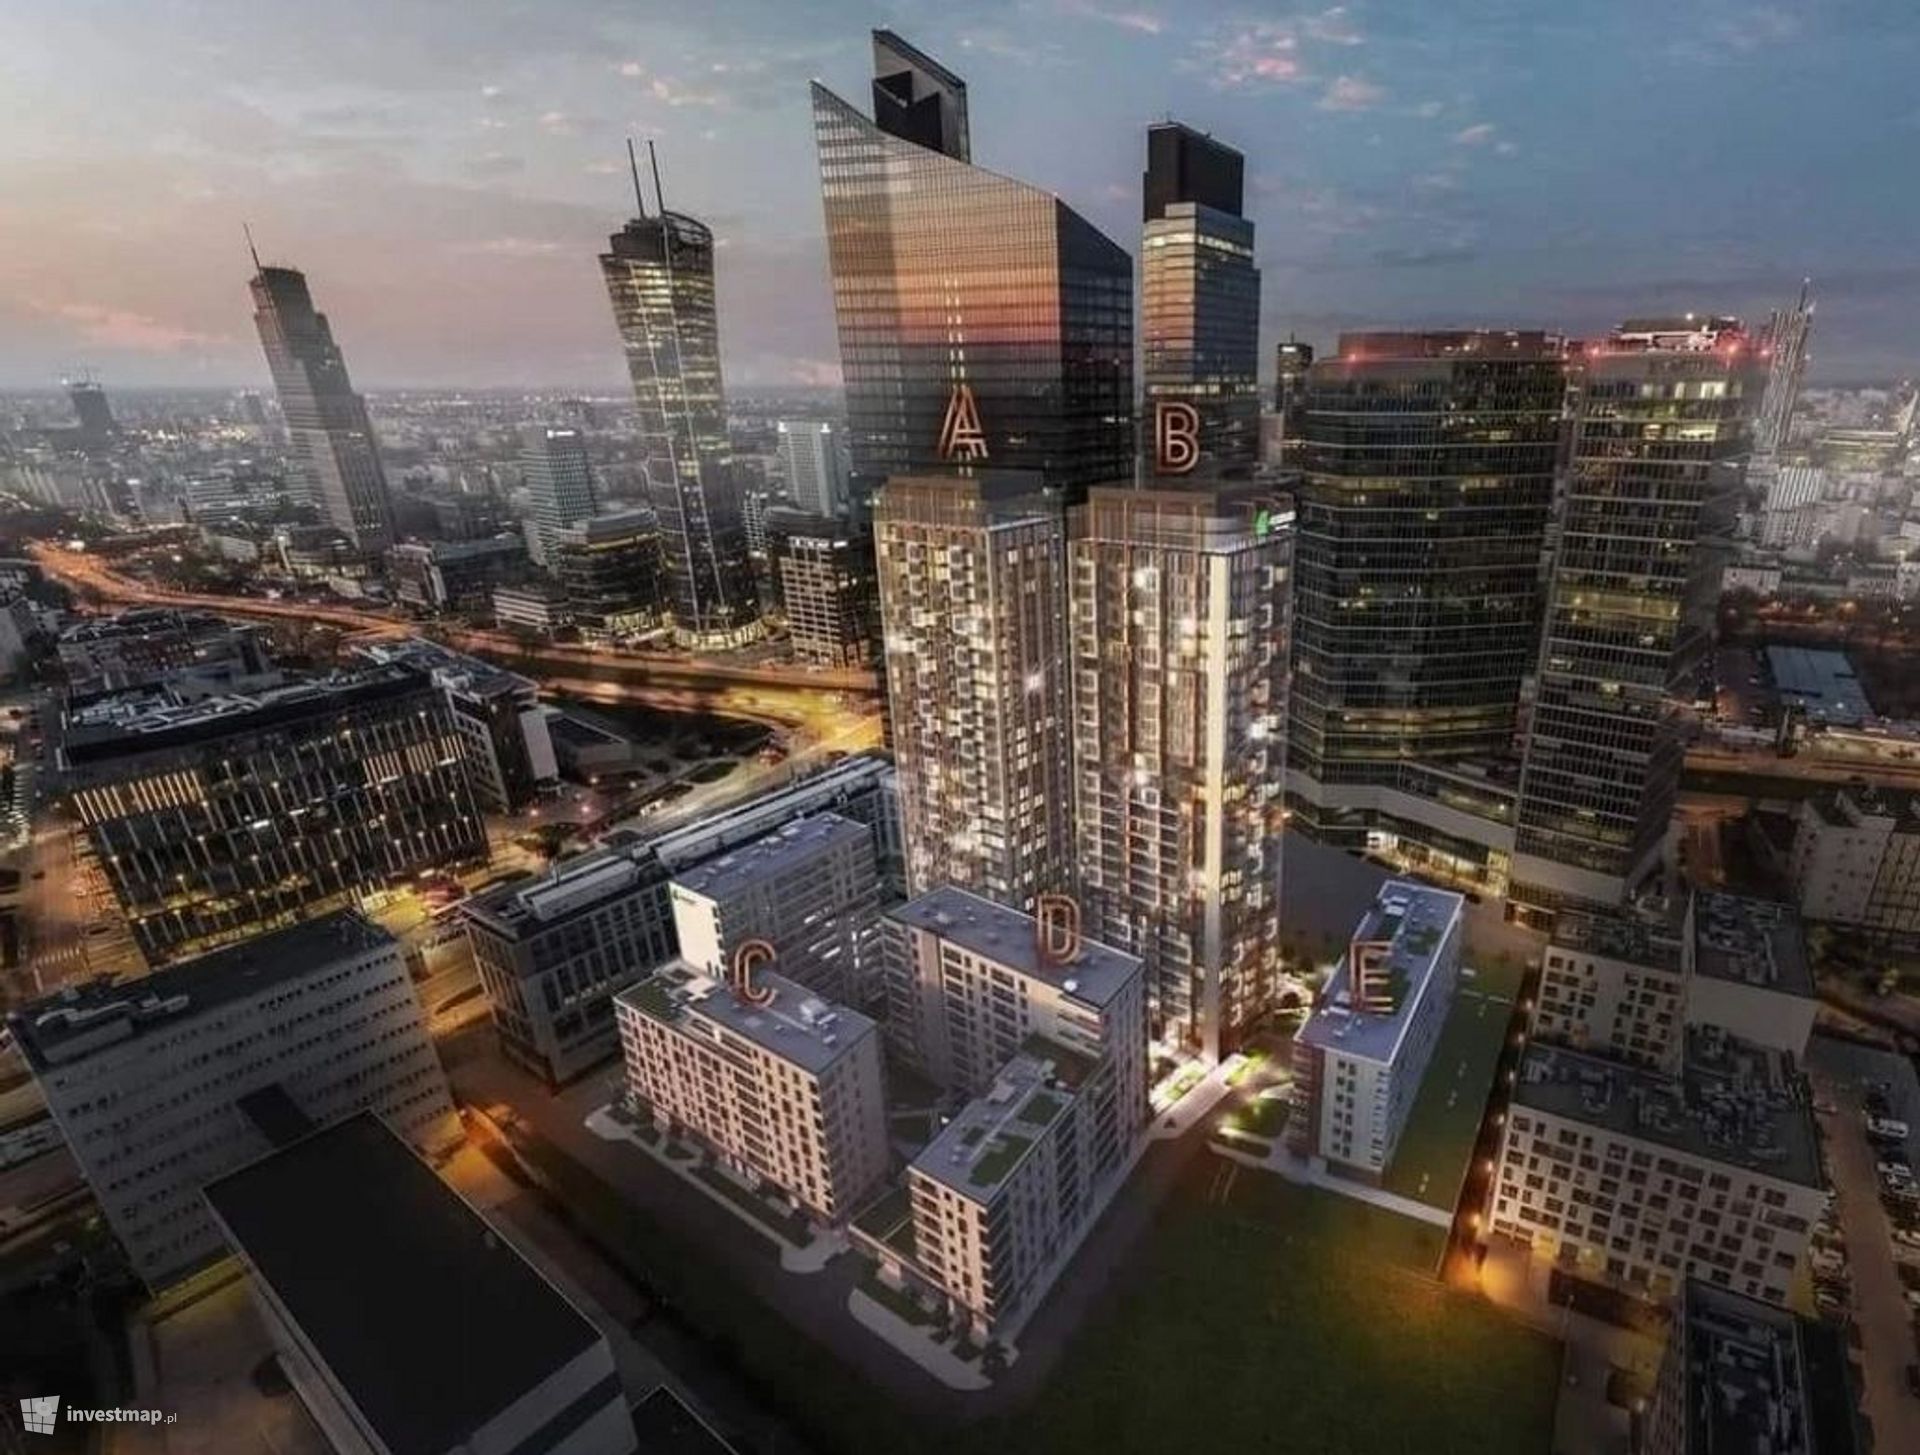 W centrum Warszawy powstają dwa nowe, 95-metrowe budynki Towarowa Towers 